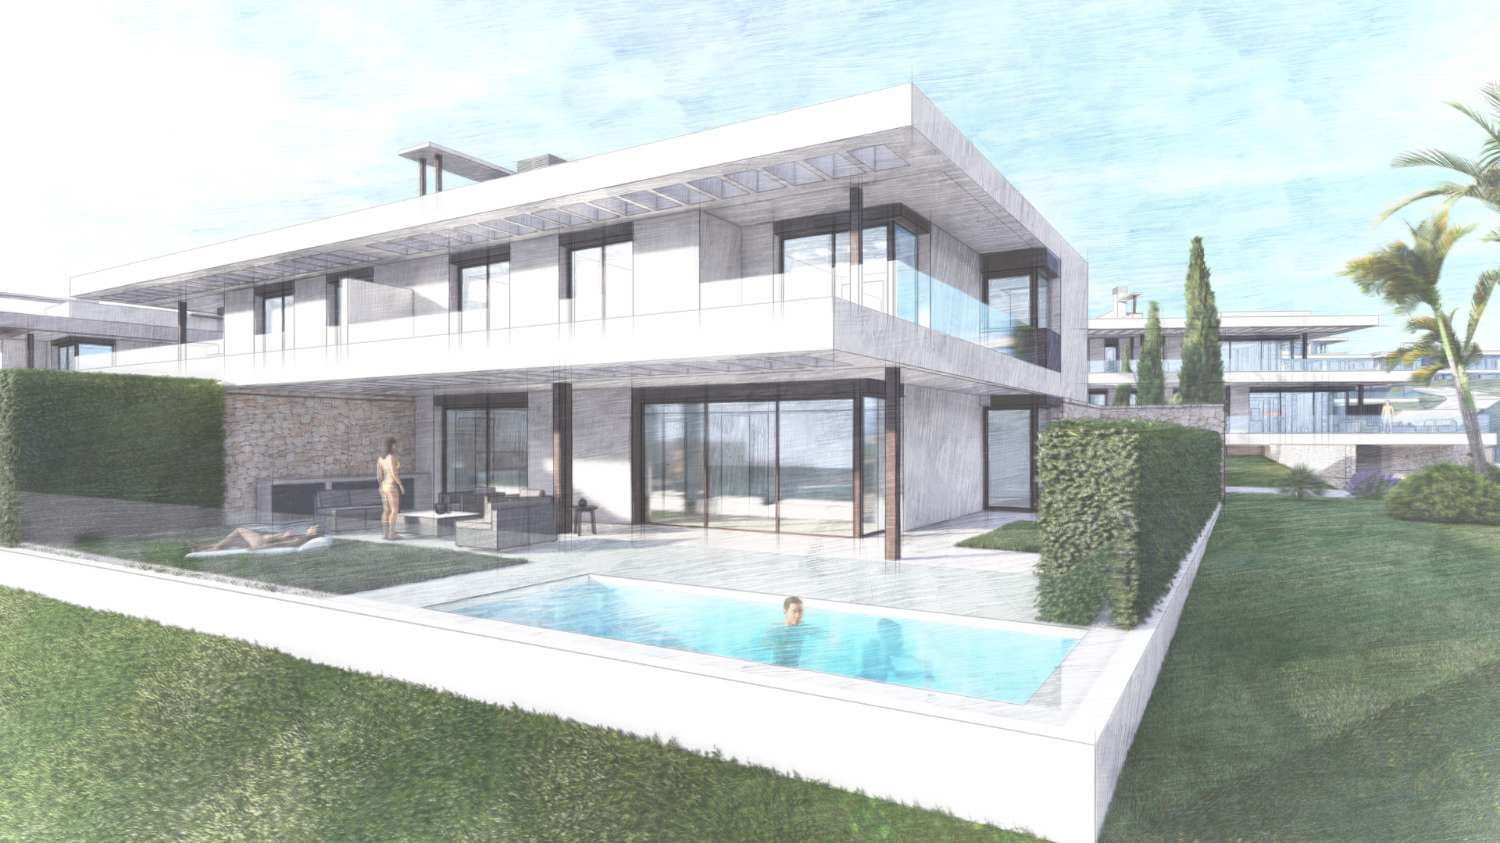 Exclusiva villa en Marbella de 4 dormitorios en urbanización con seguridad.